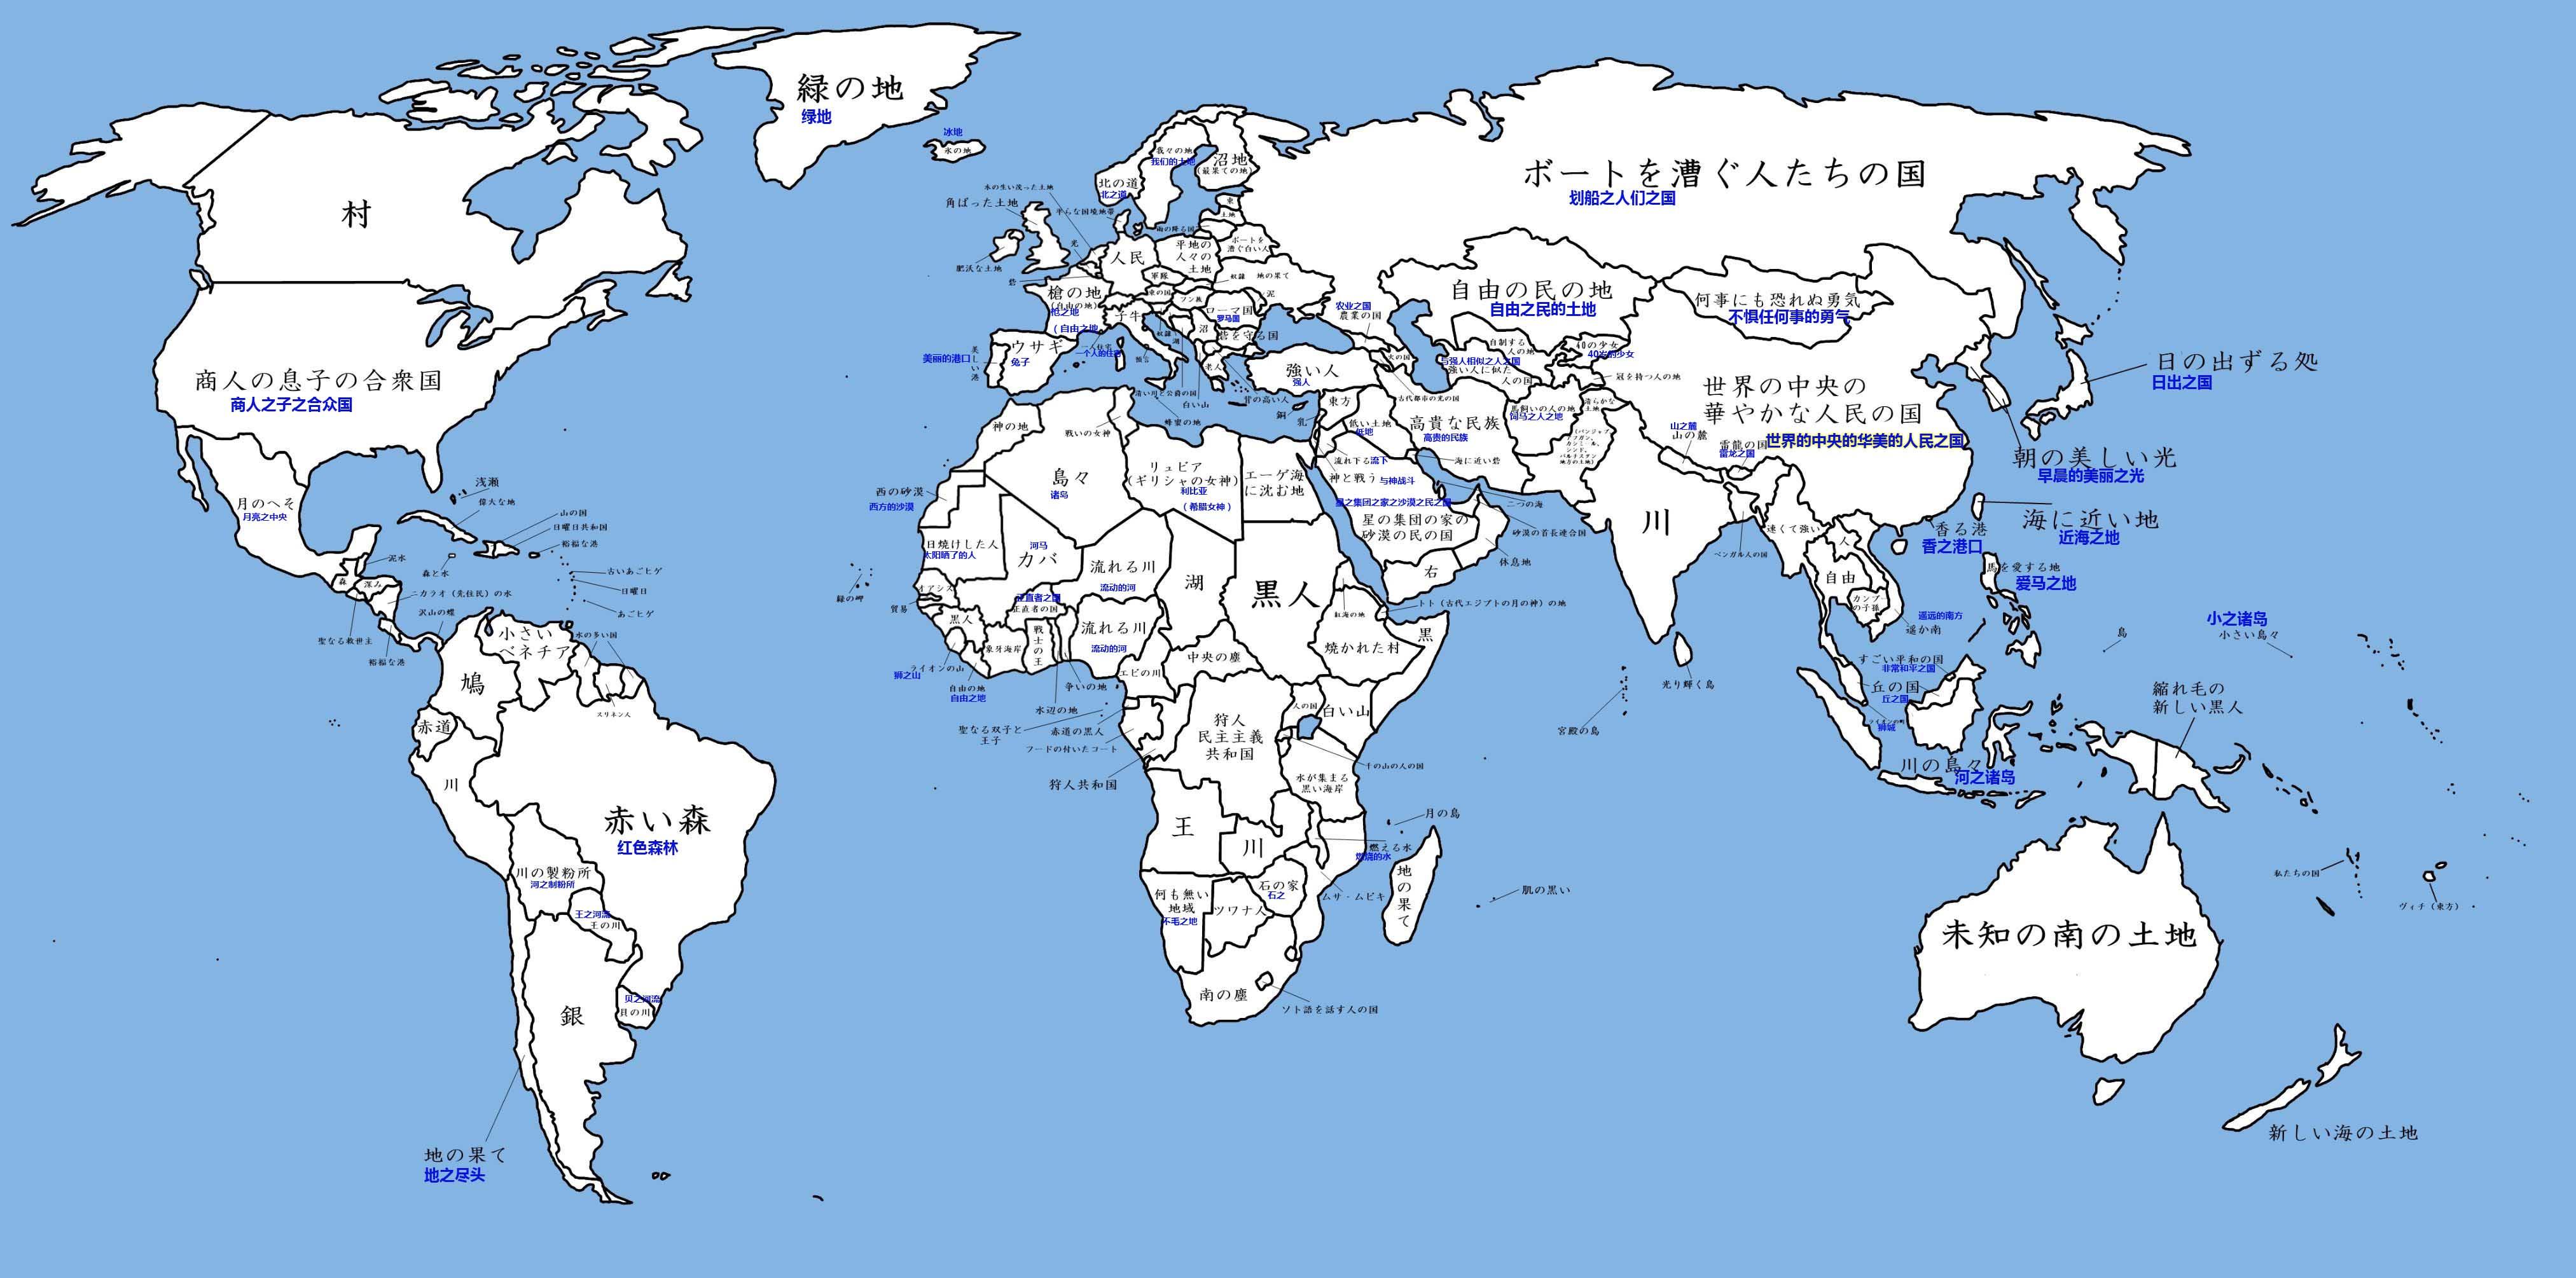 除了中国之外世界还哪些国家的名字在当地语言中是类似中央光芒之国